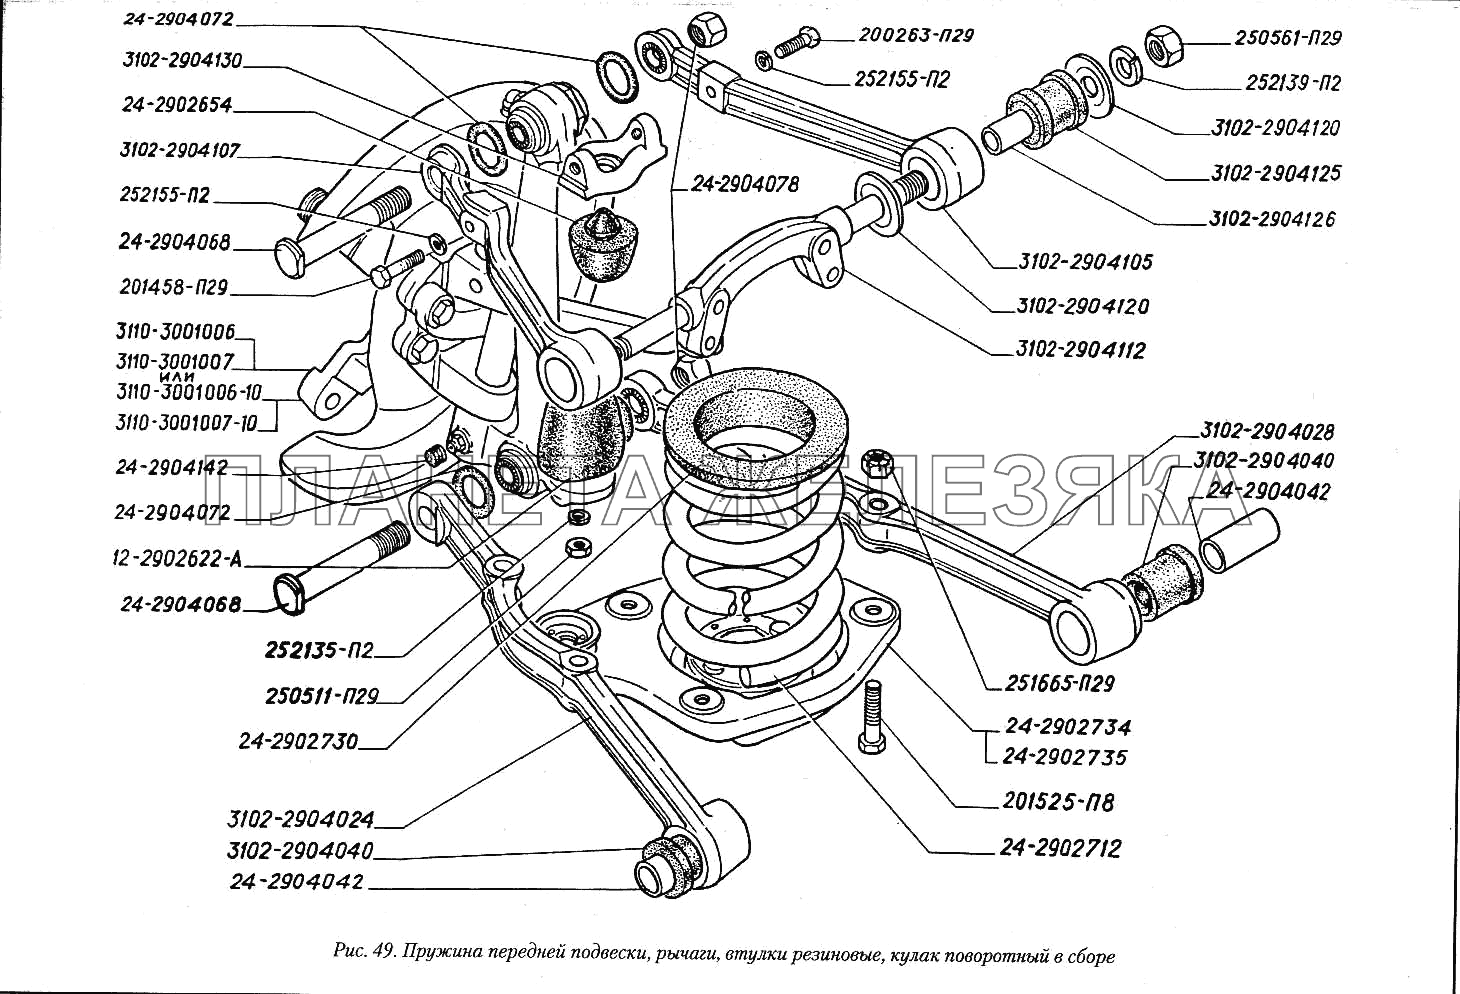 Пружина передней подвески, рычаги, втулки резиновые, кулак поворотный в сборе ГАЗ-3110